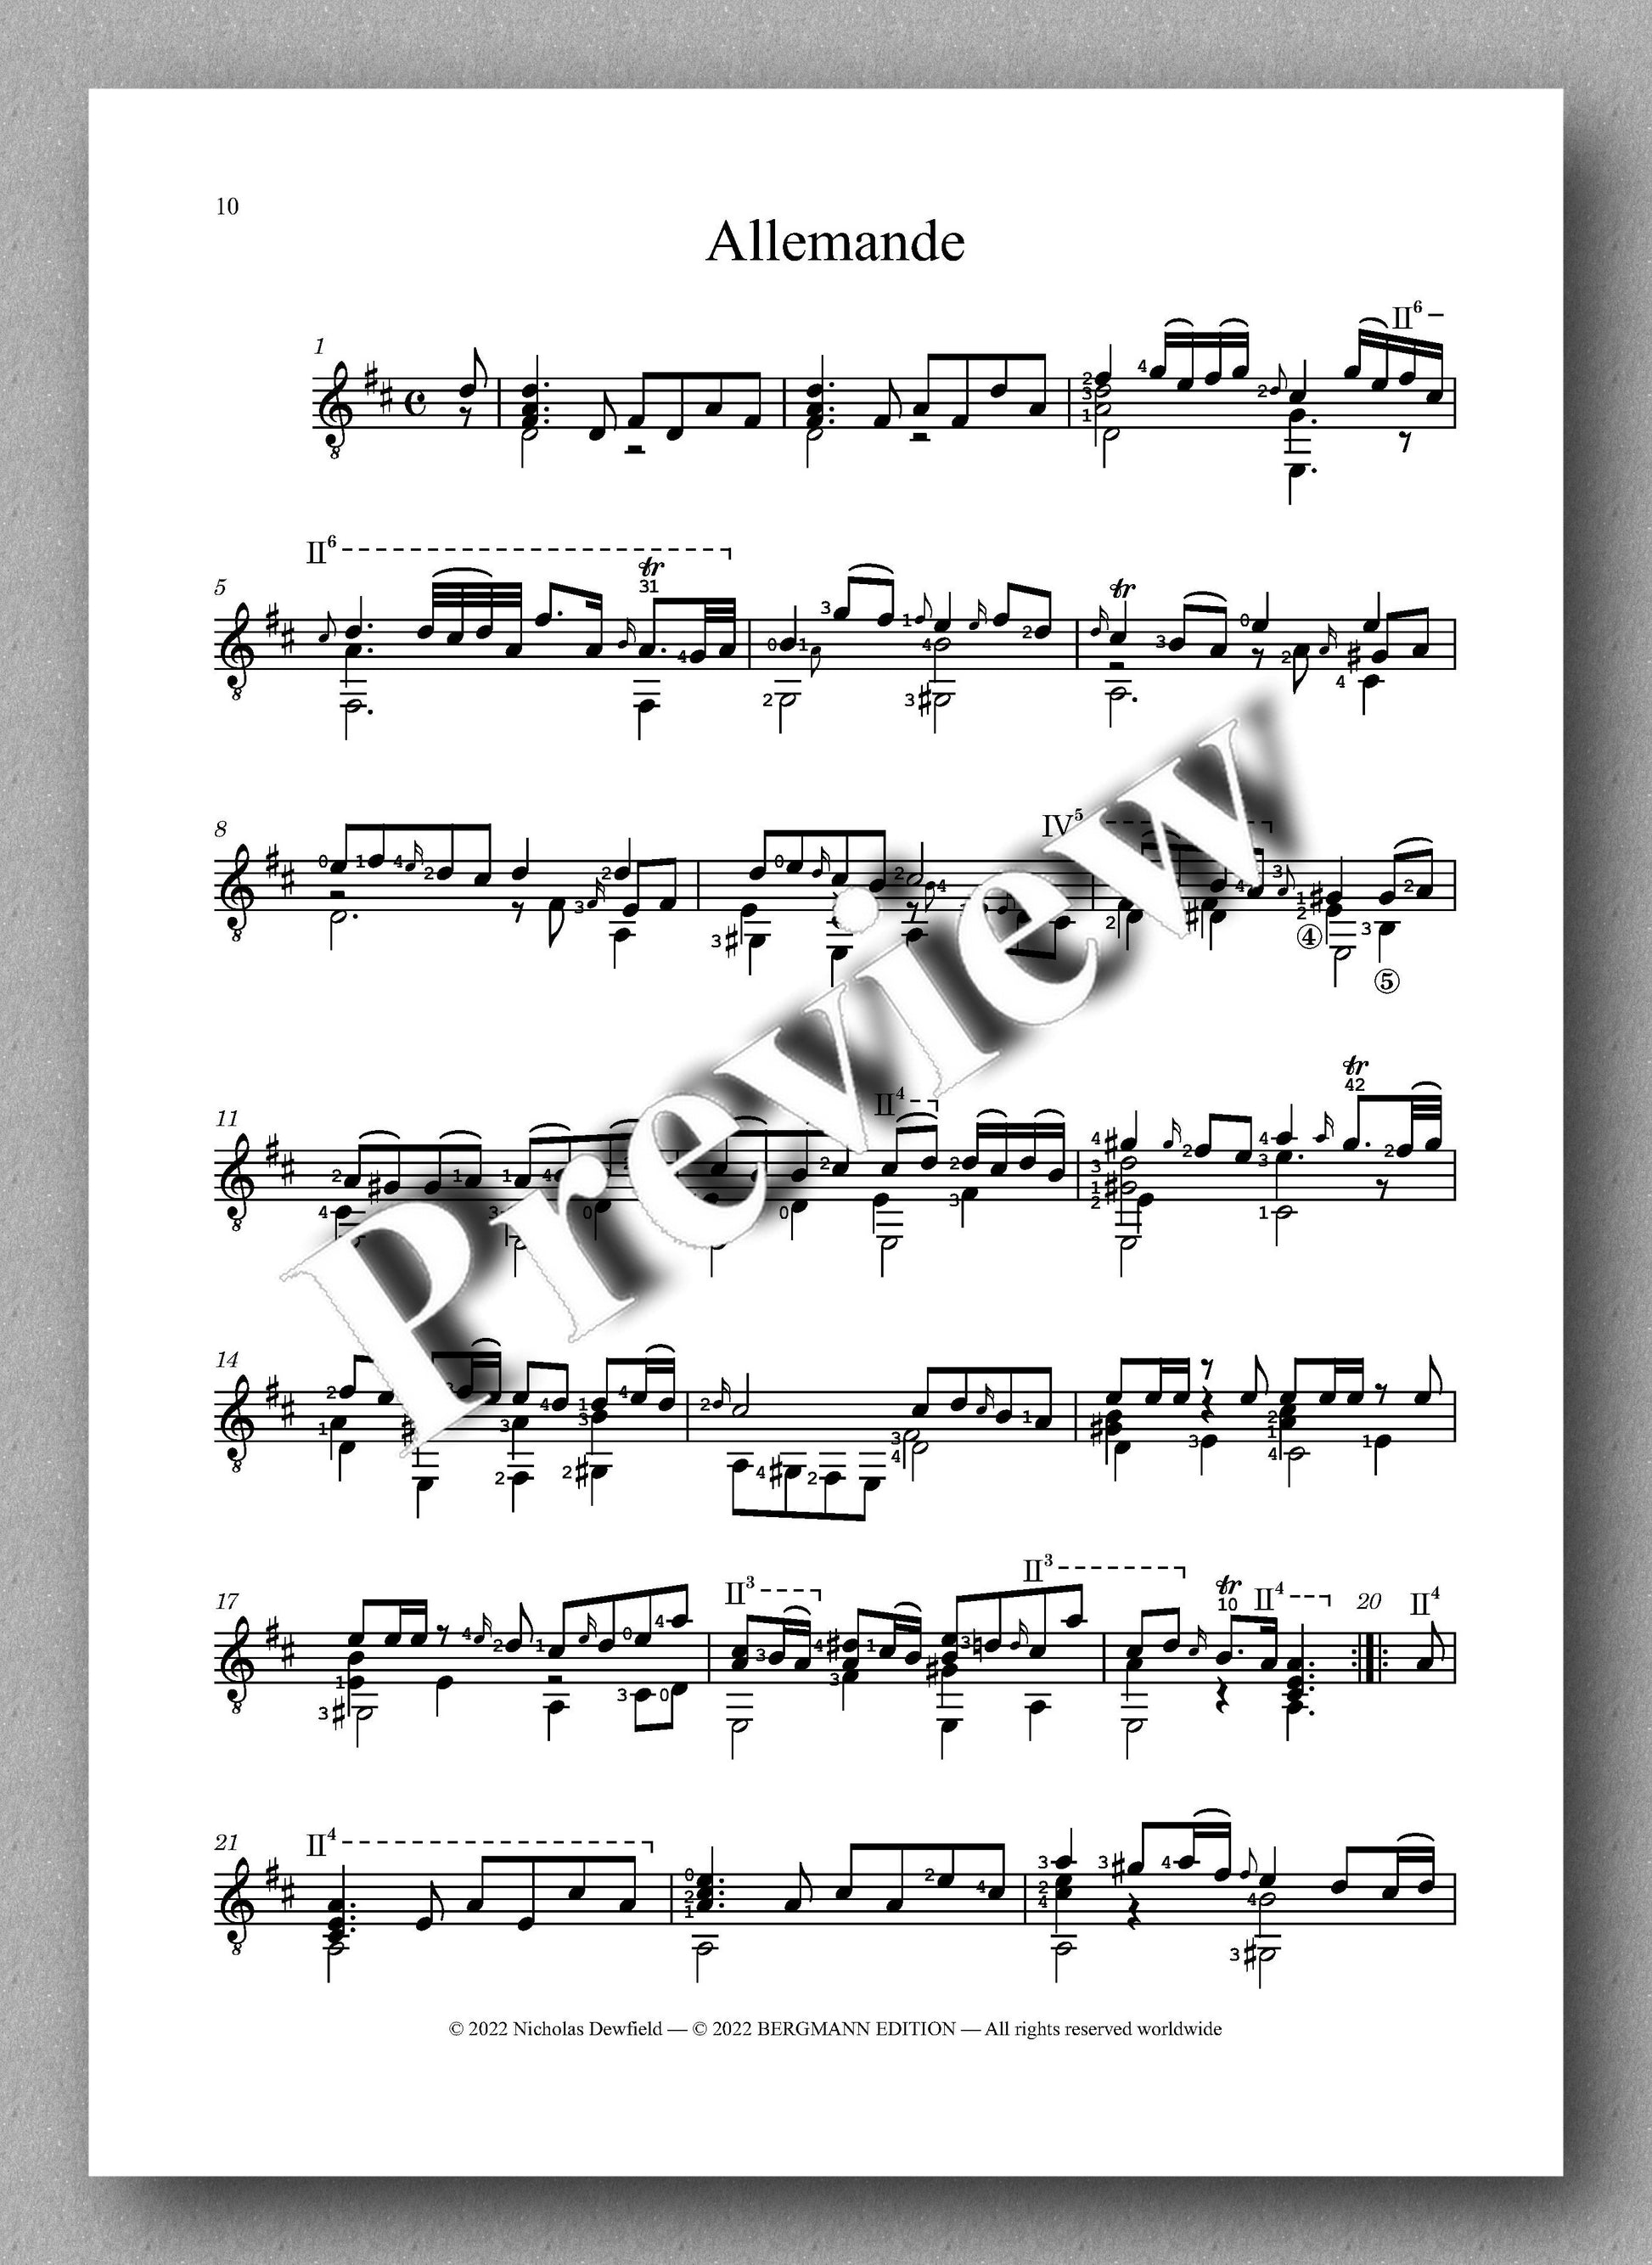 Weiss-Dewfield, Sonata No. 10 - Allemande